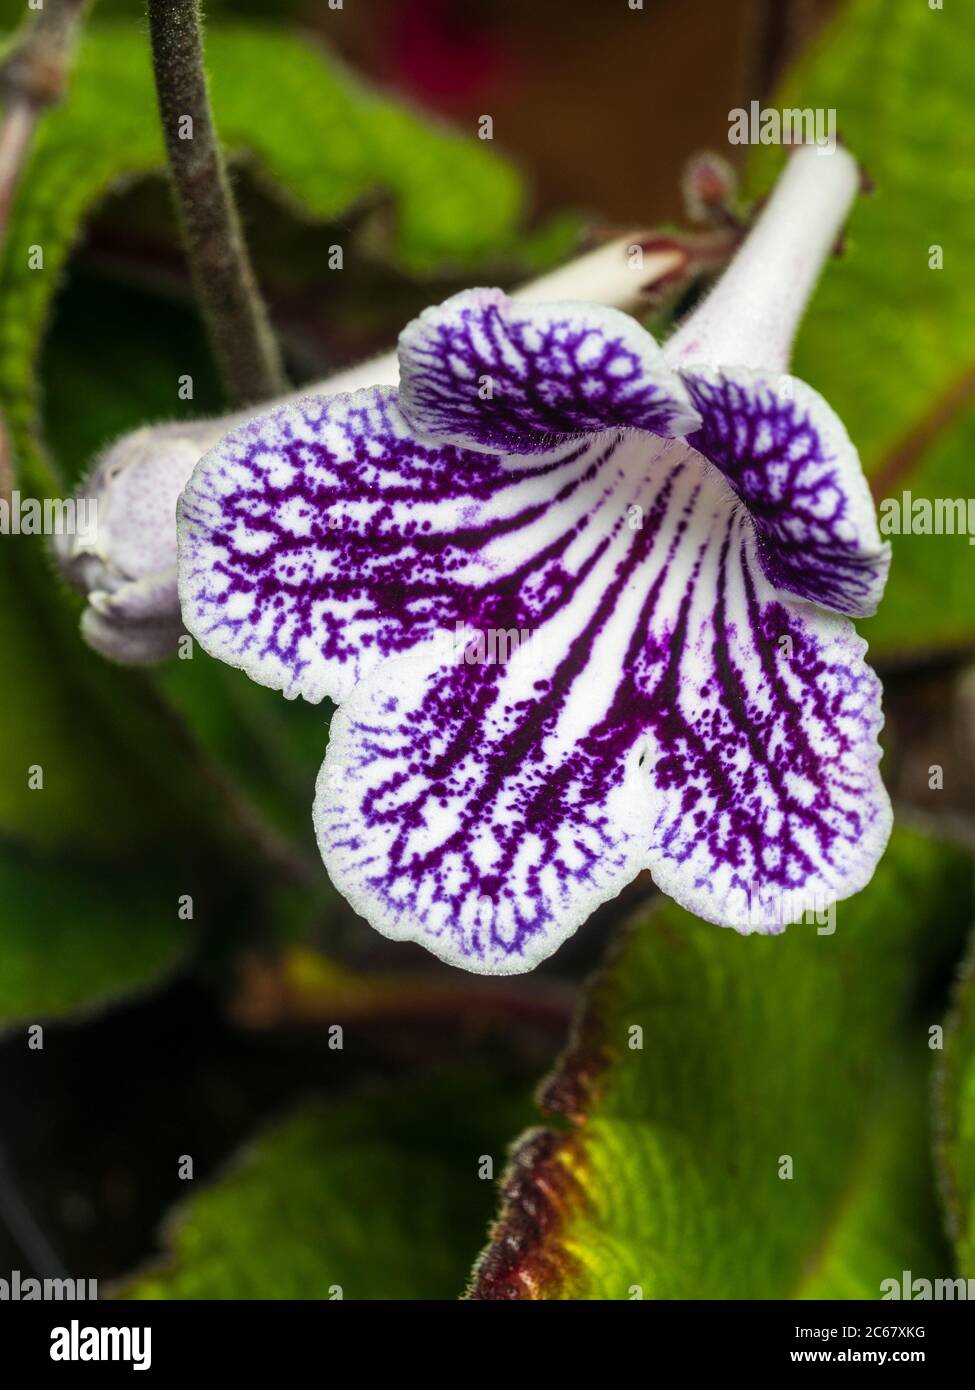 Netzlilafarben und weiße Markierungen auf der Sommerblume der immergrünen Zimmerpflanze, Streptocarpus 'Polka Dot Purple' Stockfoto